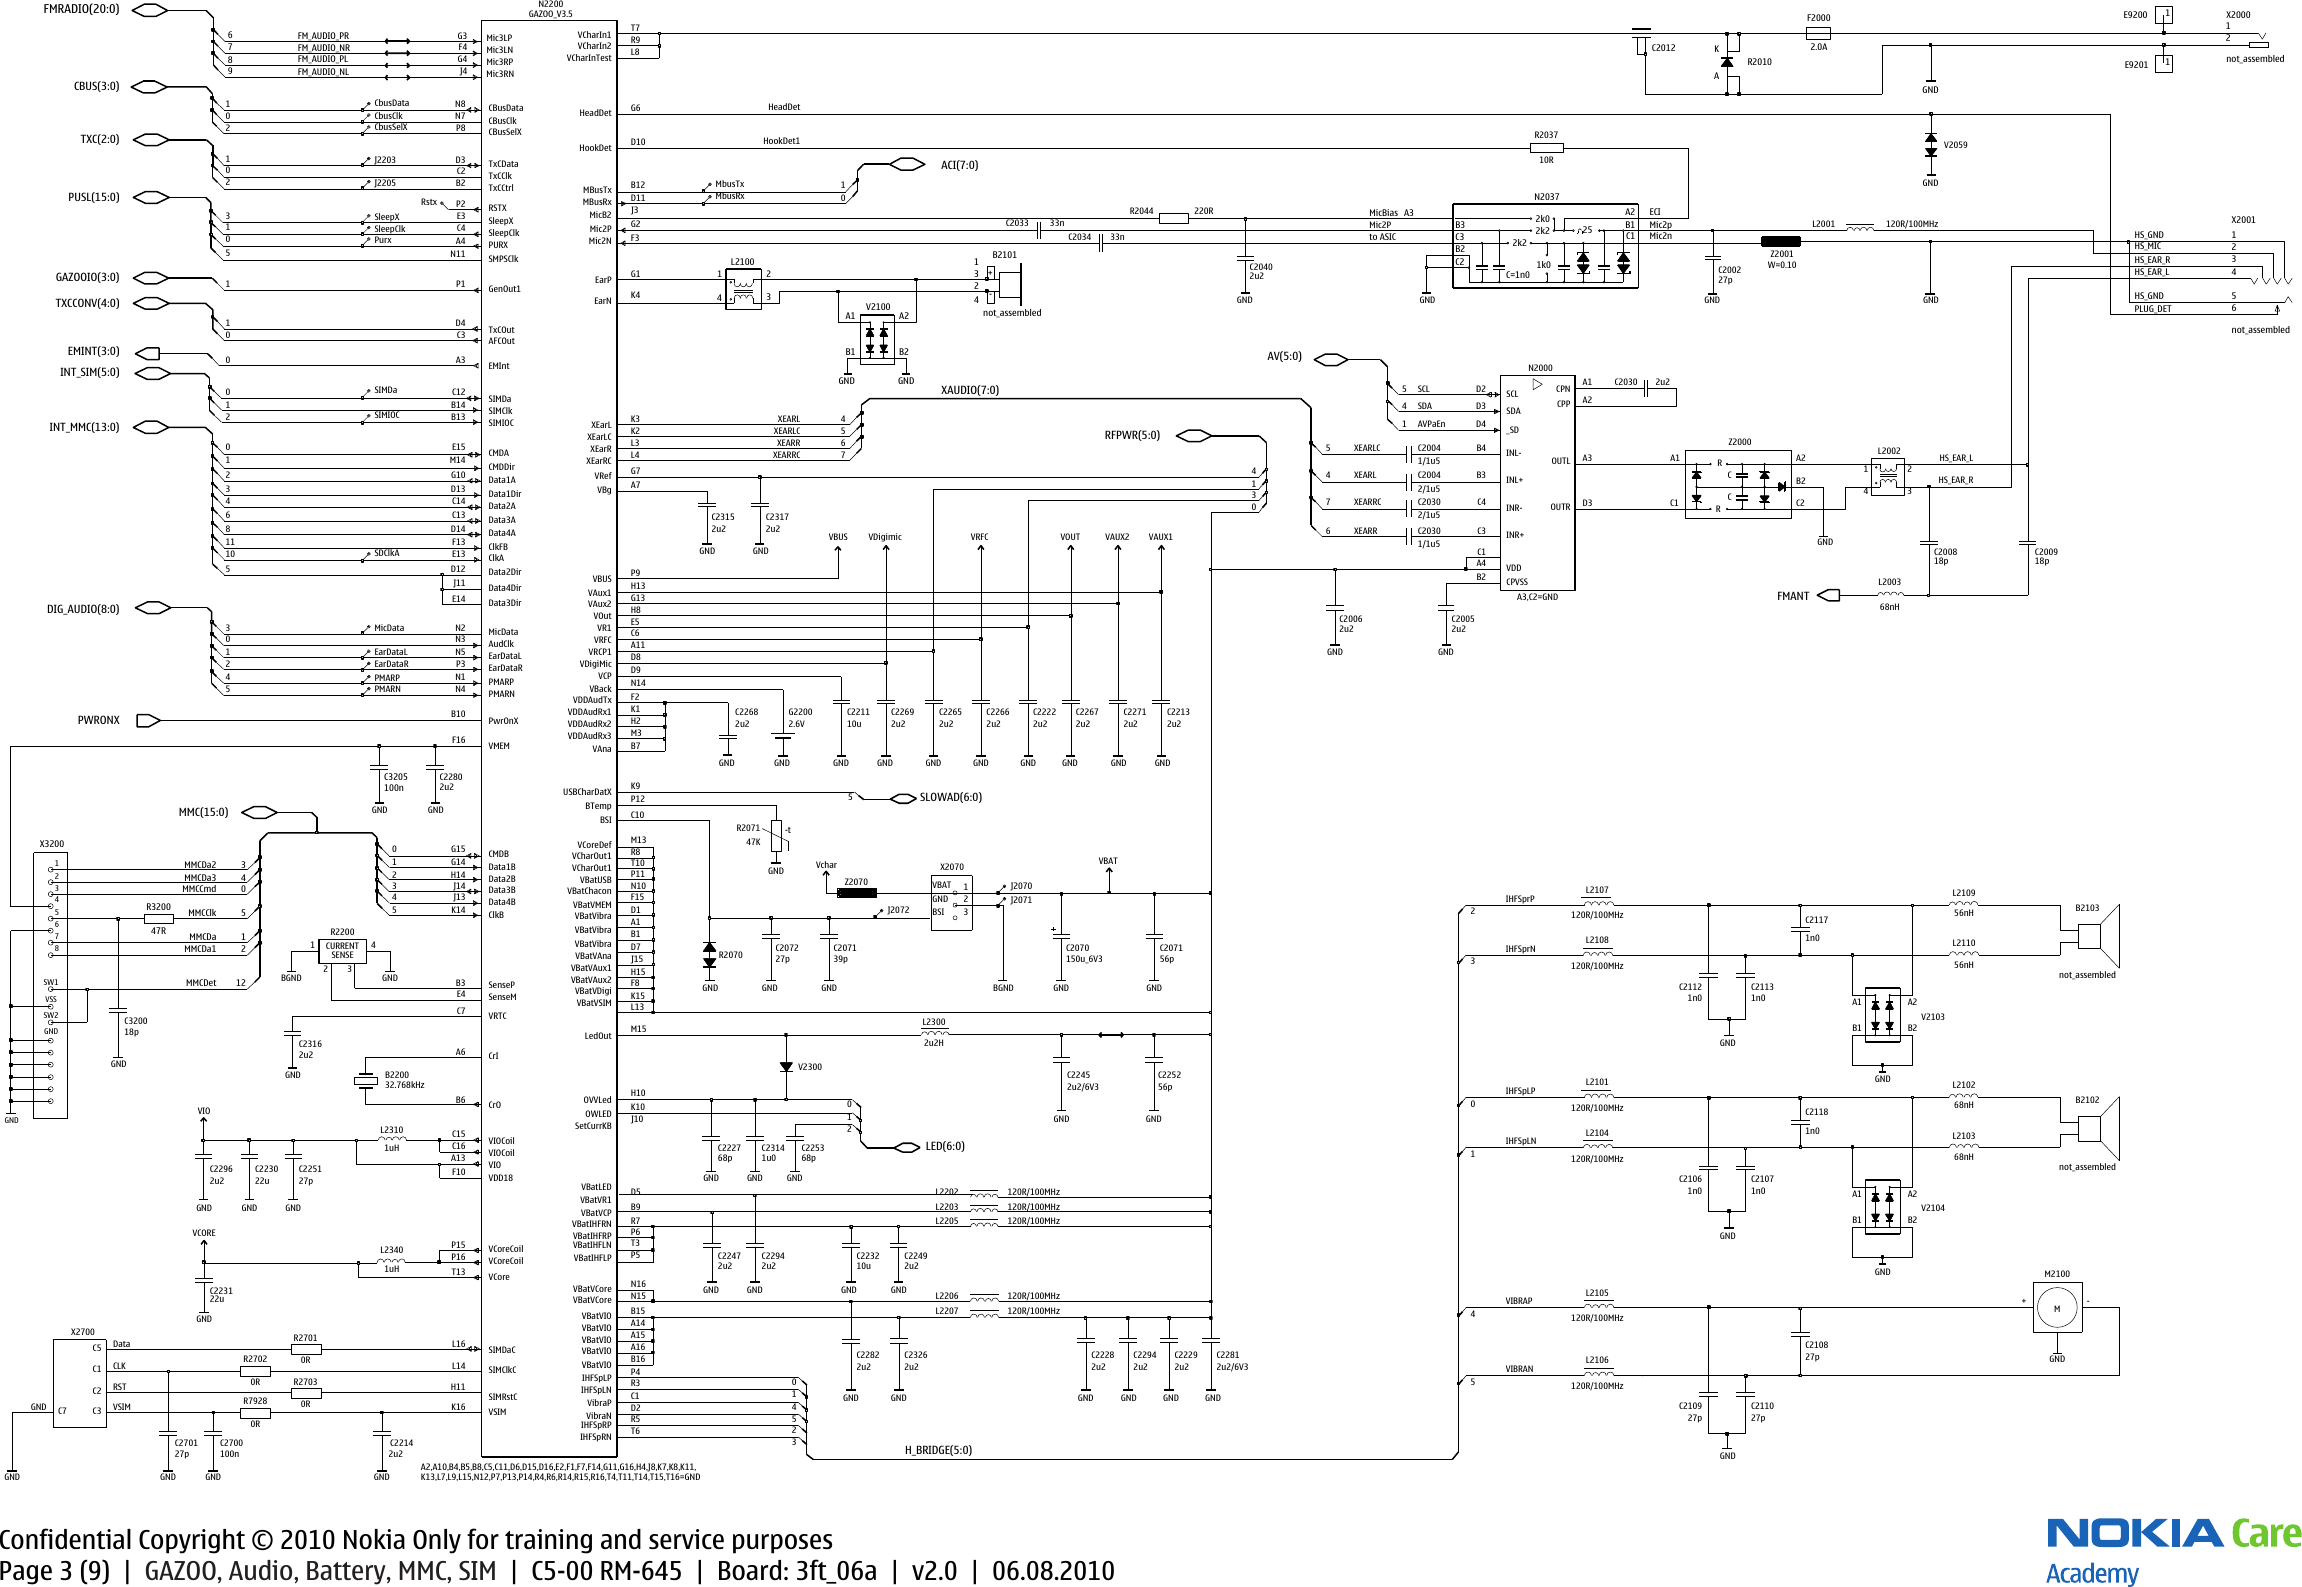 Page 3 of 10 - Nokia C5-00 RM-645 - Service Schematics. Www.s-manuals.com. Schematics V2.0